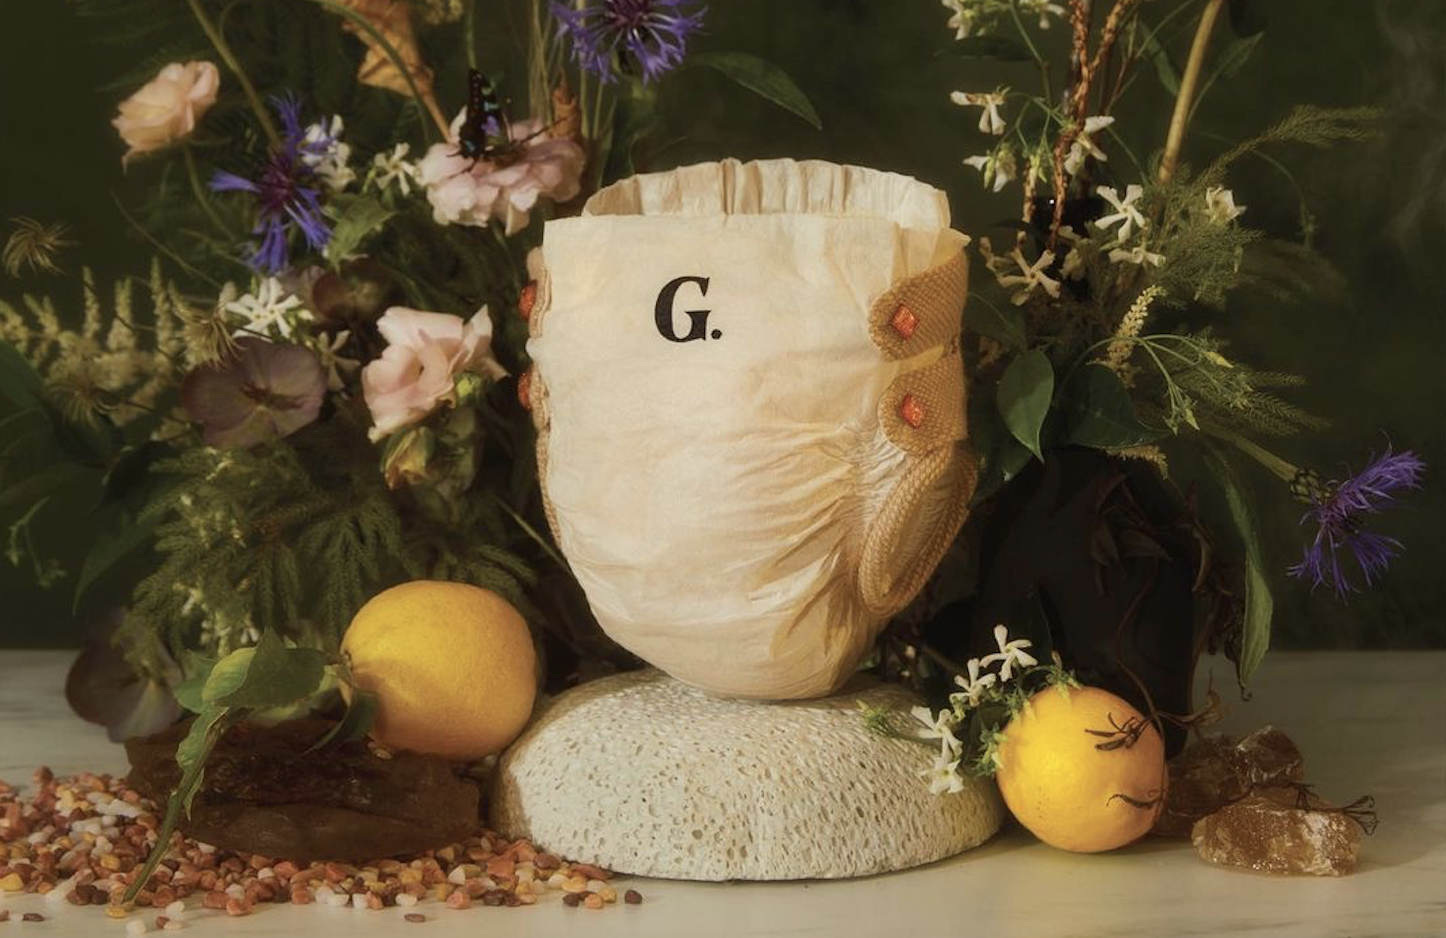 Подгузник с подкладкой из шерсти альпаки и янтарными пуговичками, выпущенный компанией Goop, принадлежащей Гвинет Пэлтроу. Фото © Instagram (запрещён на территории Российской Федерации) / goop